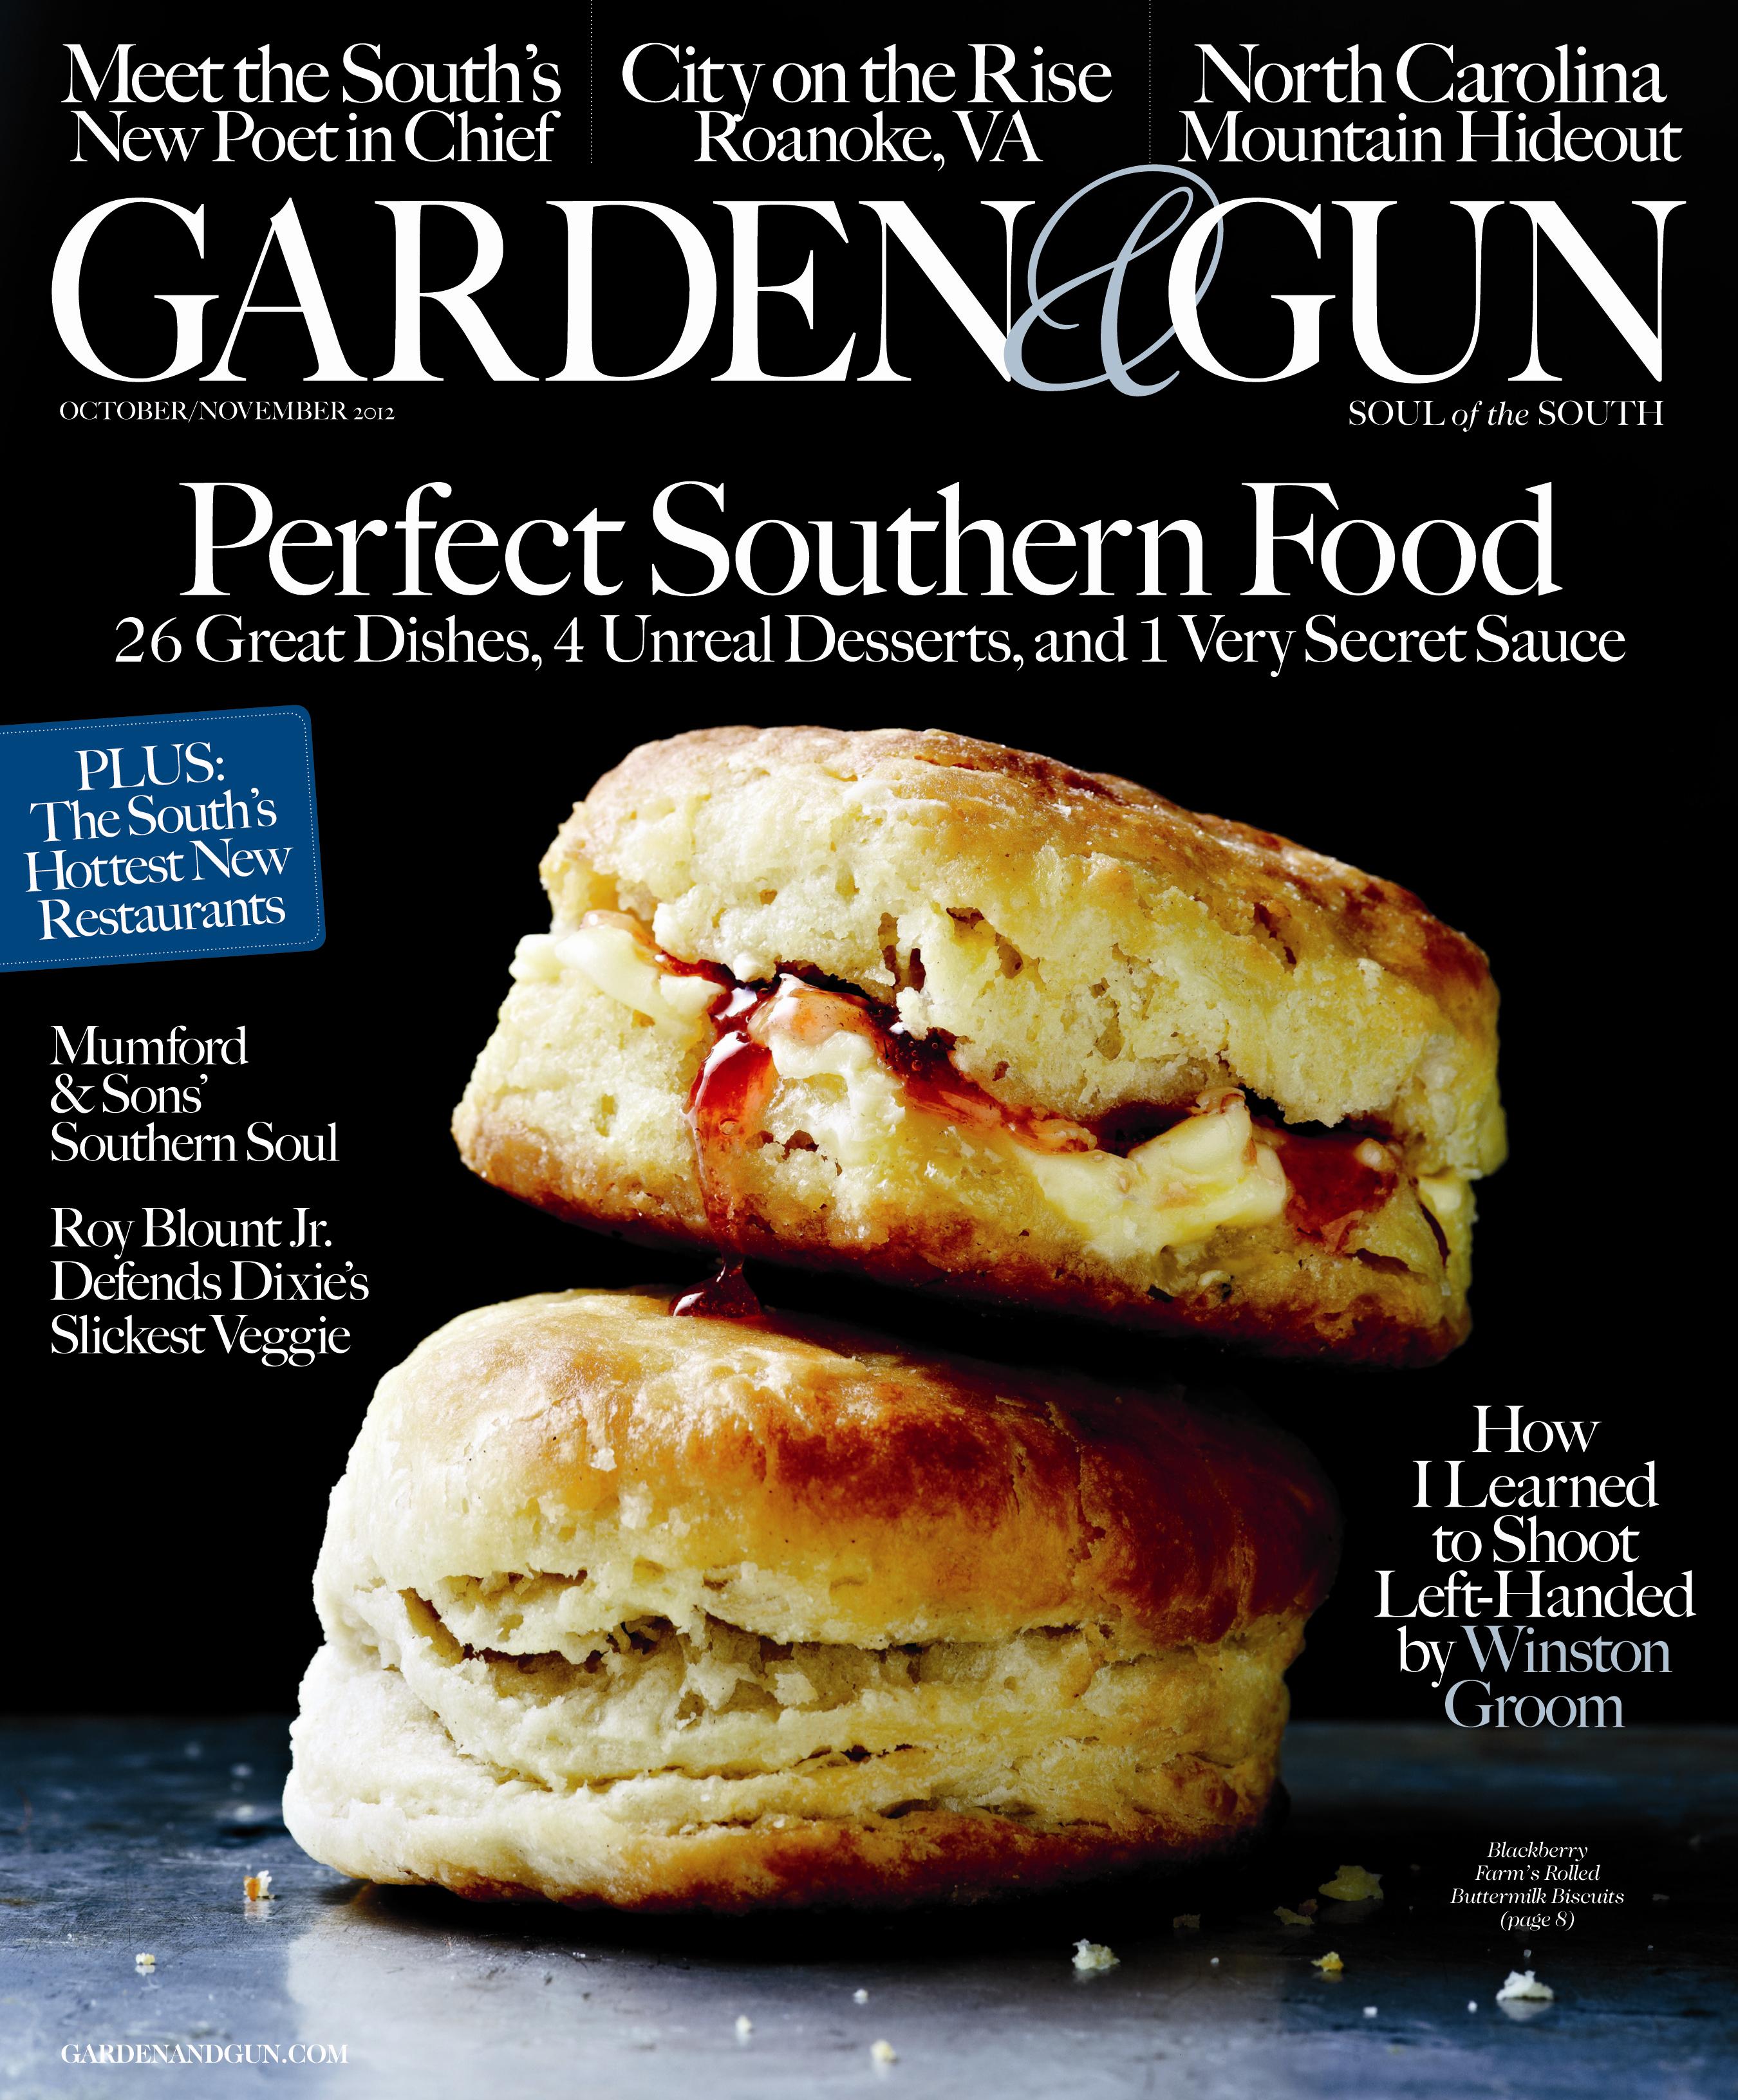 Garden & Gun-October/November 2012: "Perfect Southern Food"